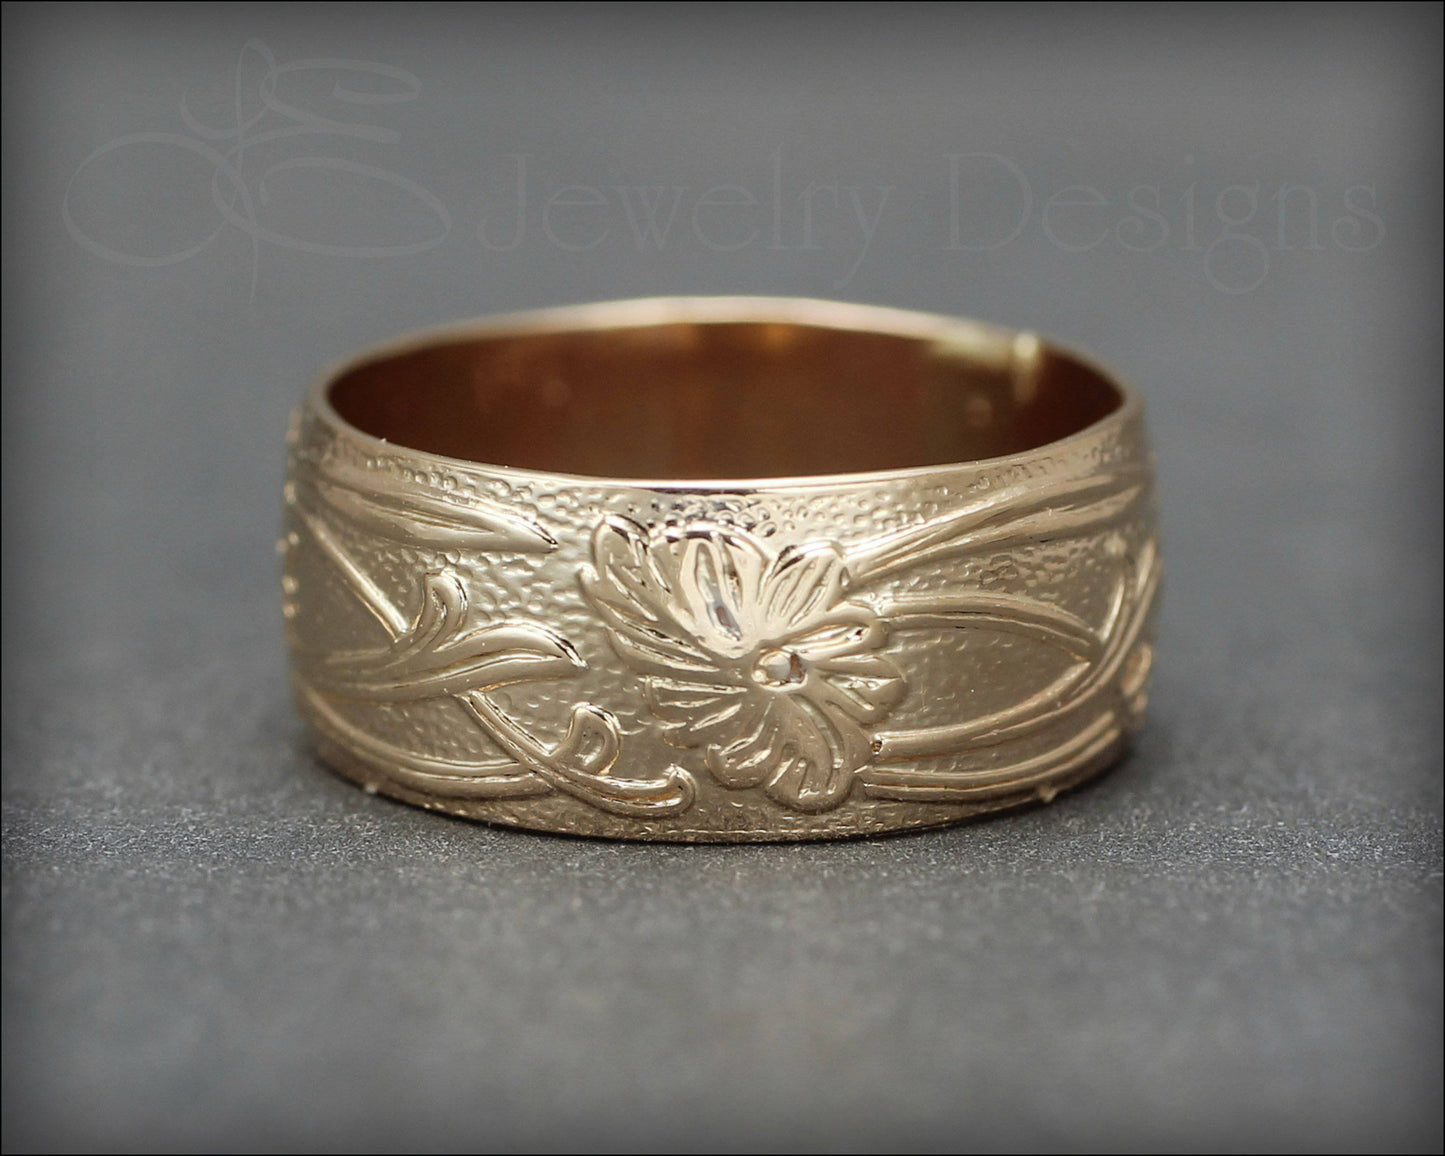 Gold Art Nouveau Wide Floral Band - LE Jewelry Designs